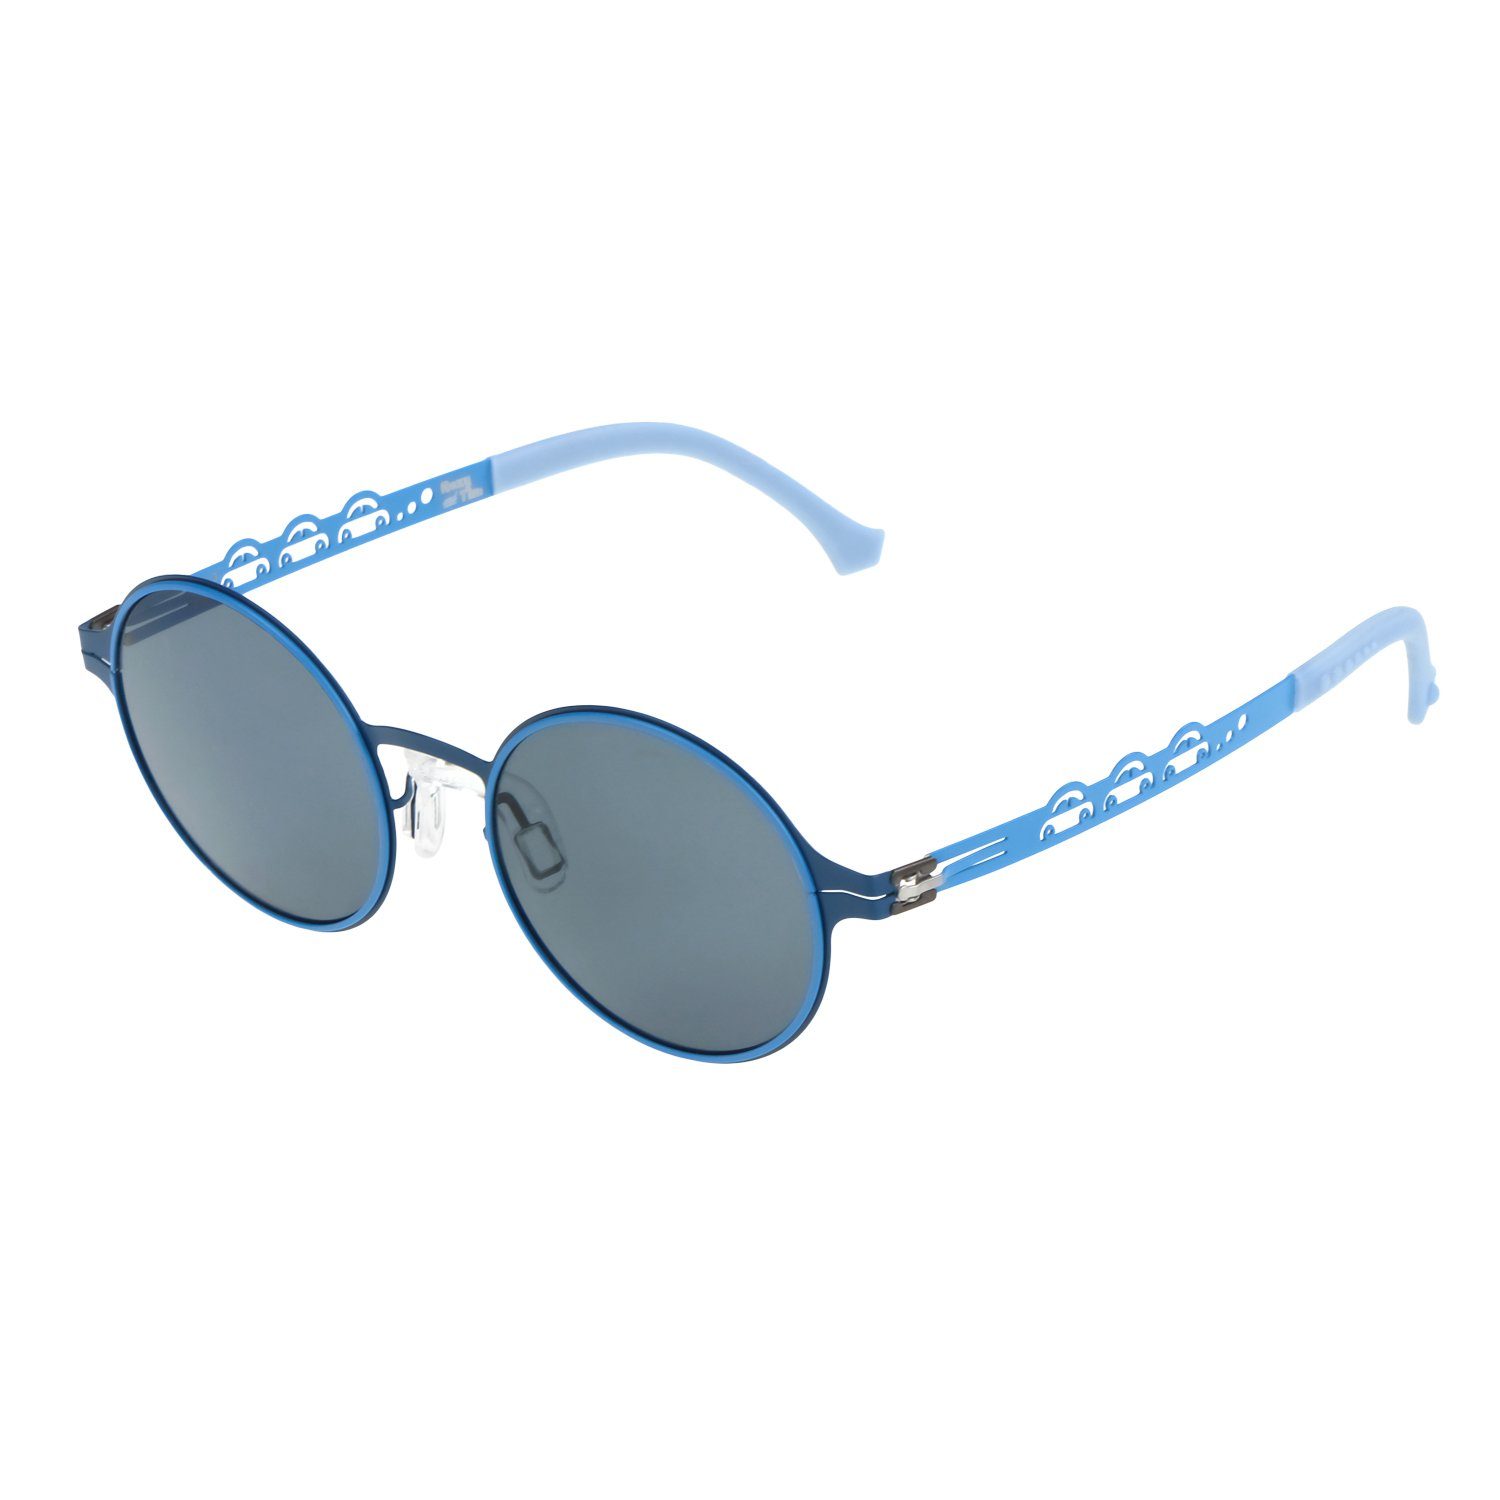 ActiveSol SUNGLASSES Sonnenbrille Kinder Sonnenbrille, Private Eyes, 3-8 Jahre pulverbeschichteter Metallrahmen, weiche Ohrenschoner, leicht 15g Blau - Car